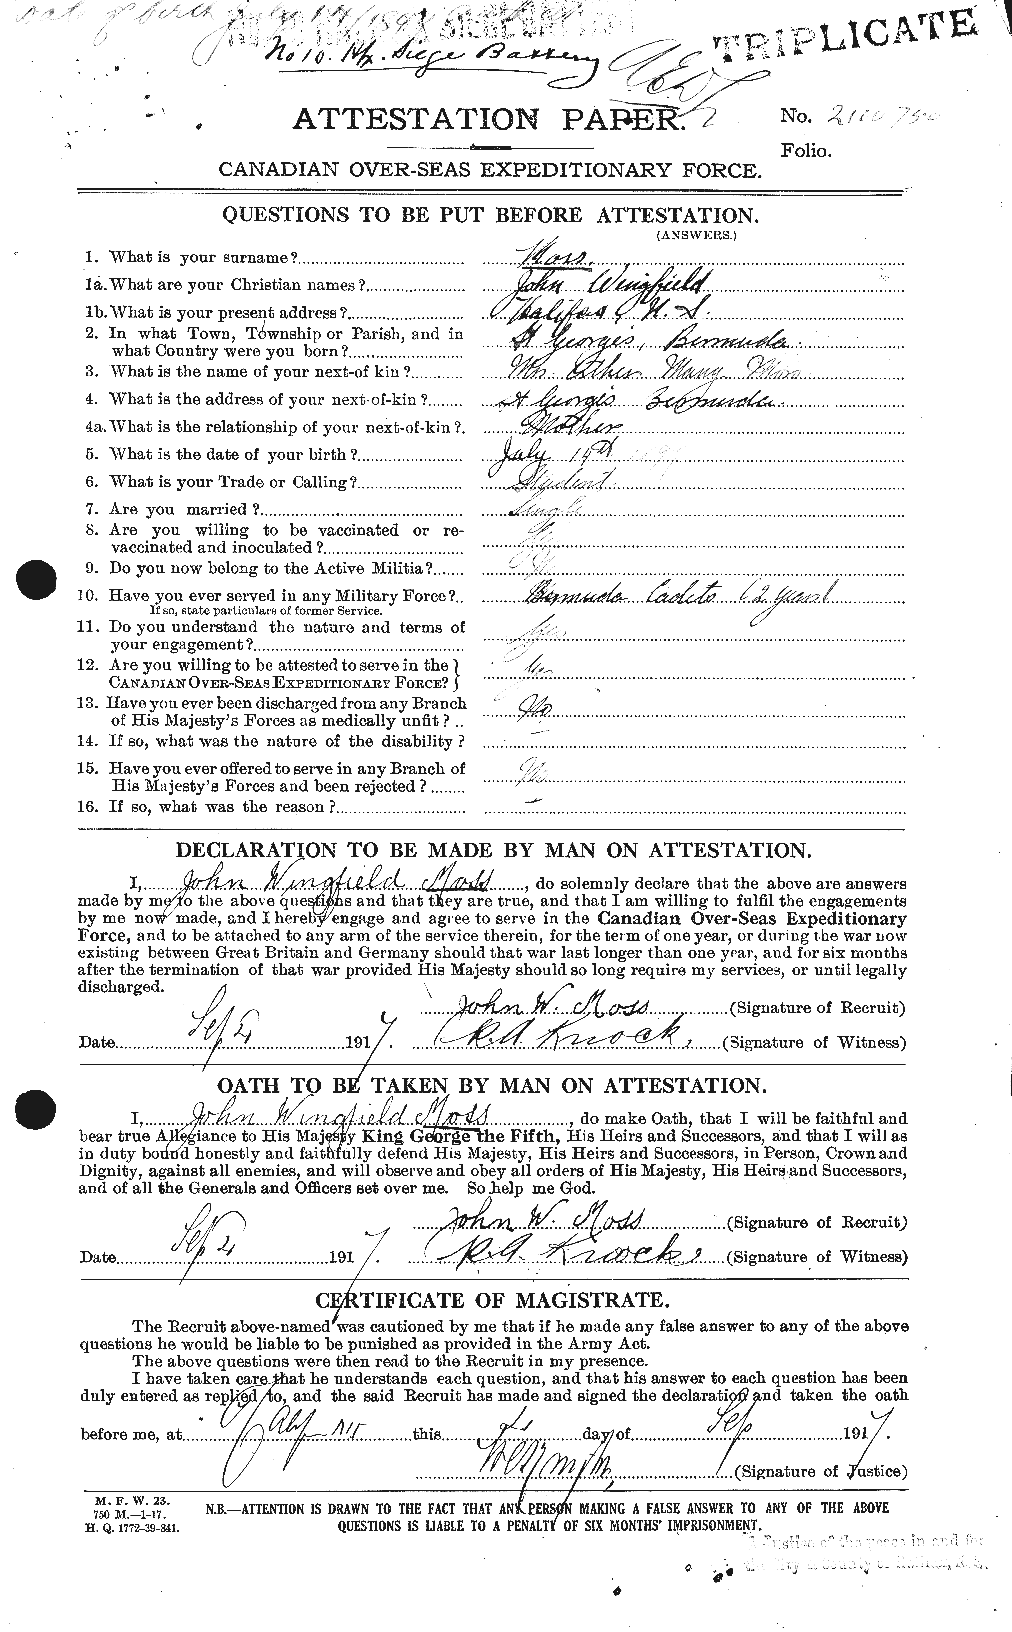 Dossiers du Personnel de la Première Guerre mondiale - CEC 512033a